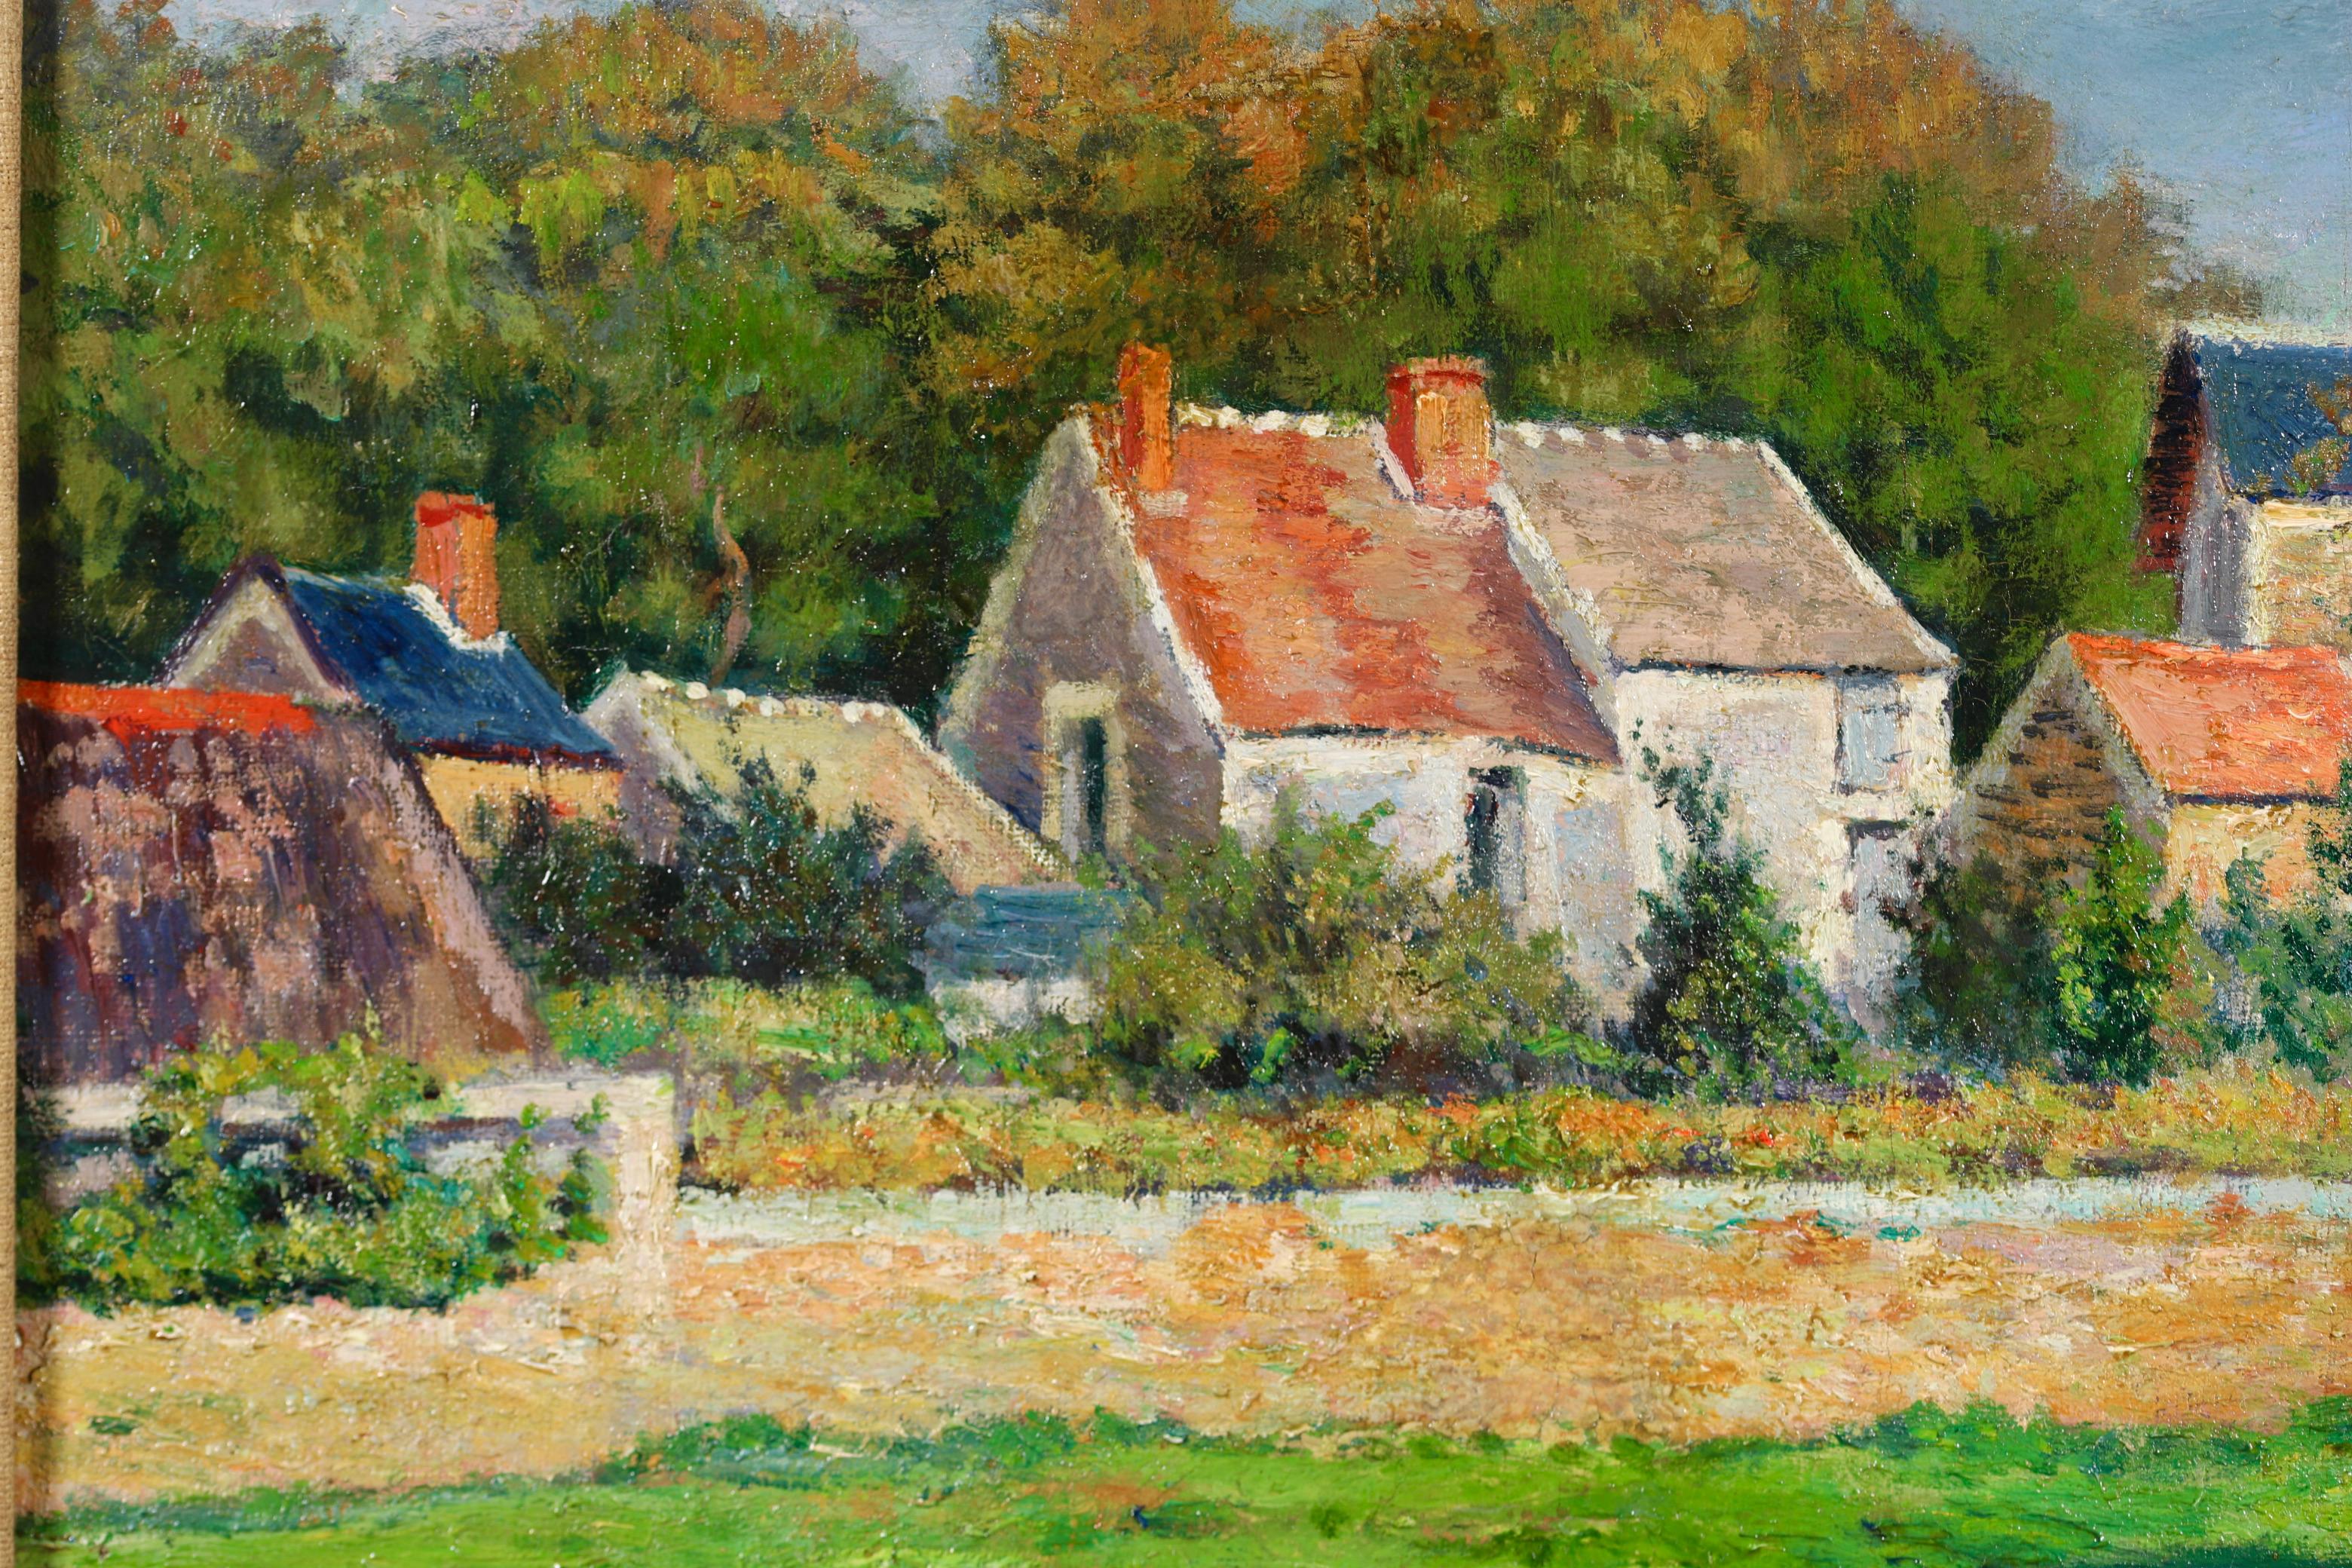 La Ferme - Impressionist Landscape Oil Painting by Victor Vignon 3